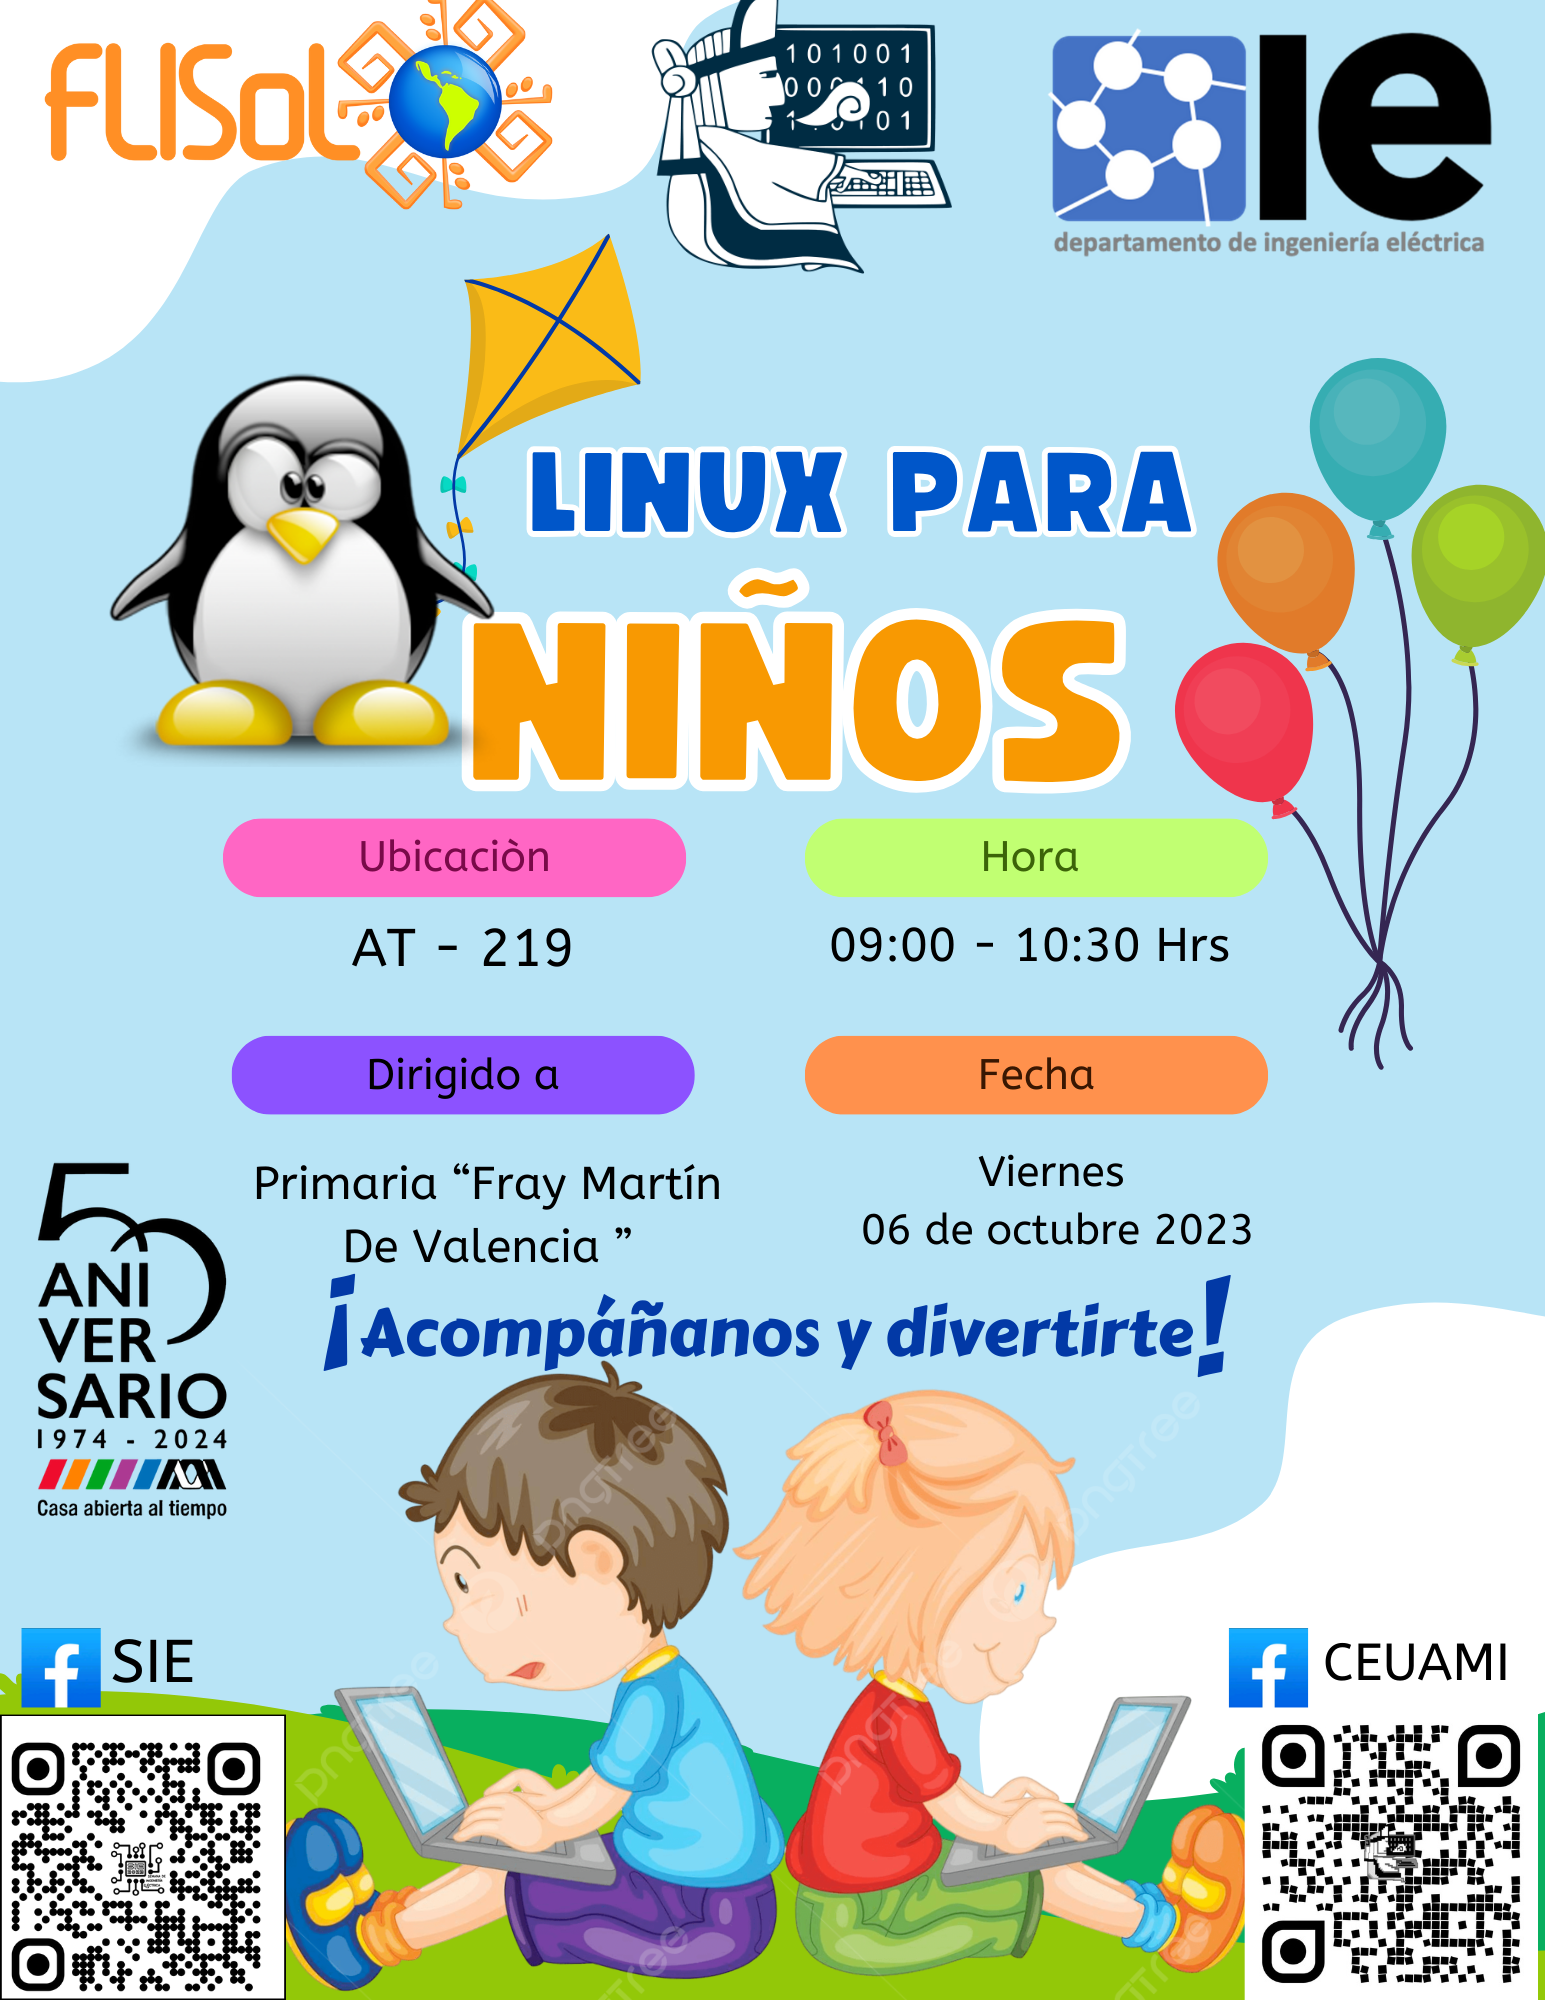 Linux para niños